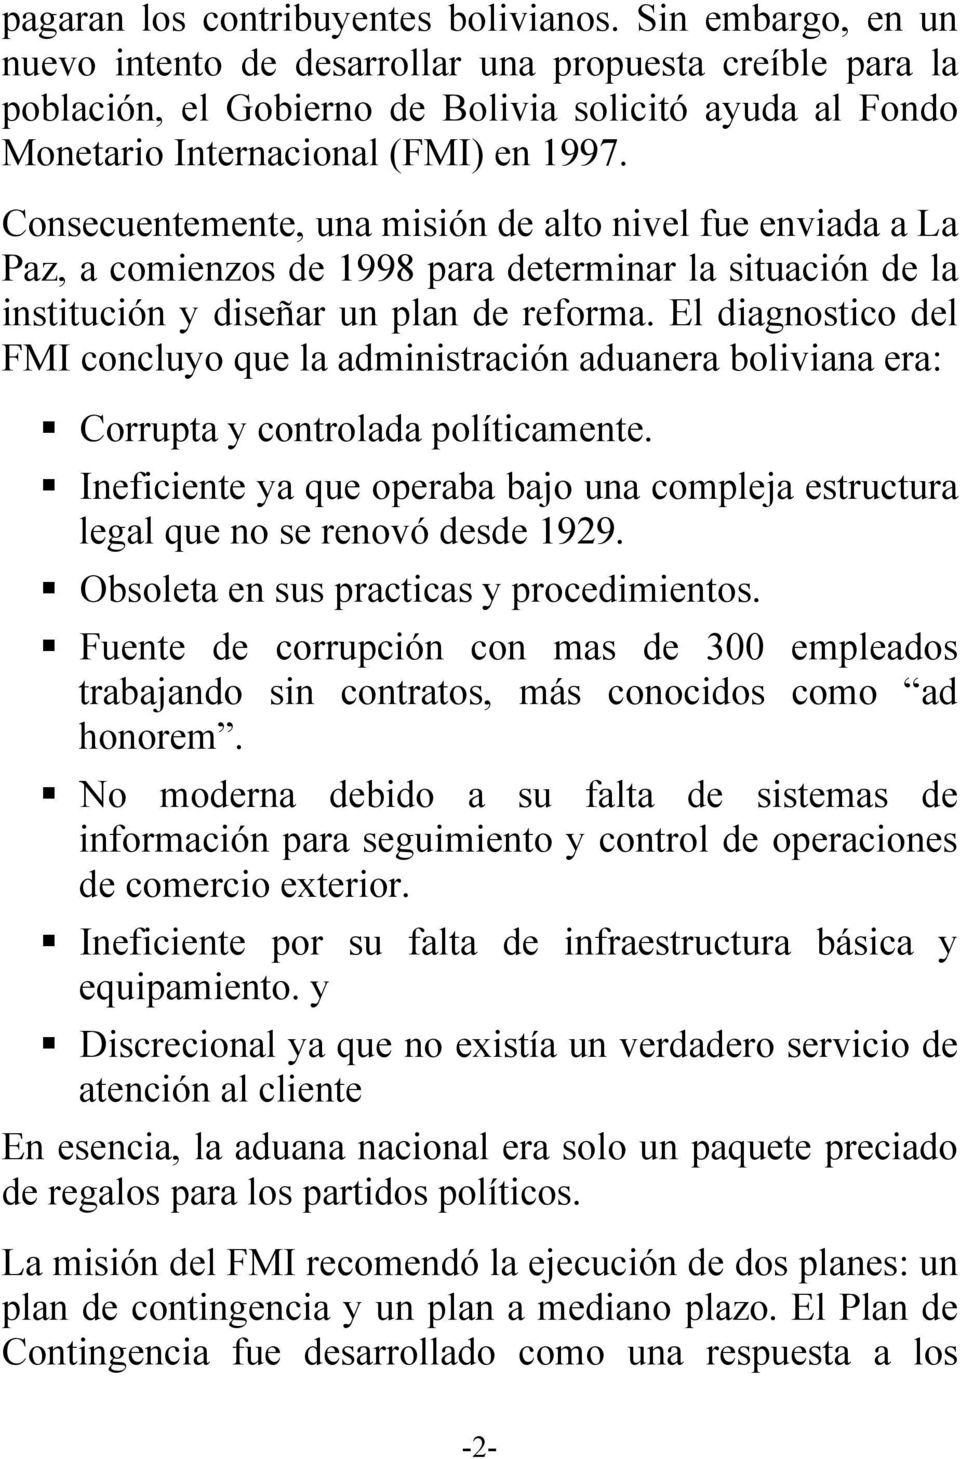 Consecuentemente, una misión de alto nivel fue enviada a La Paz, a comienzos de 1998 para determinar la situación de la institución y diseñar un plan de reforma.